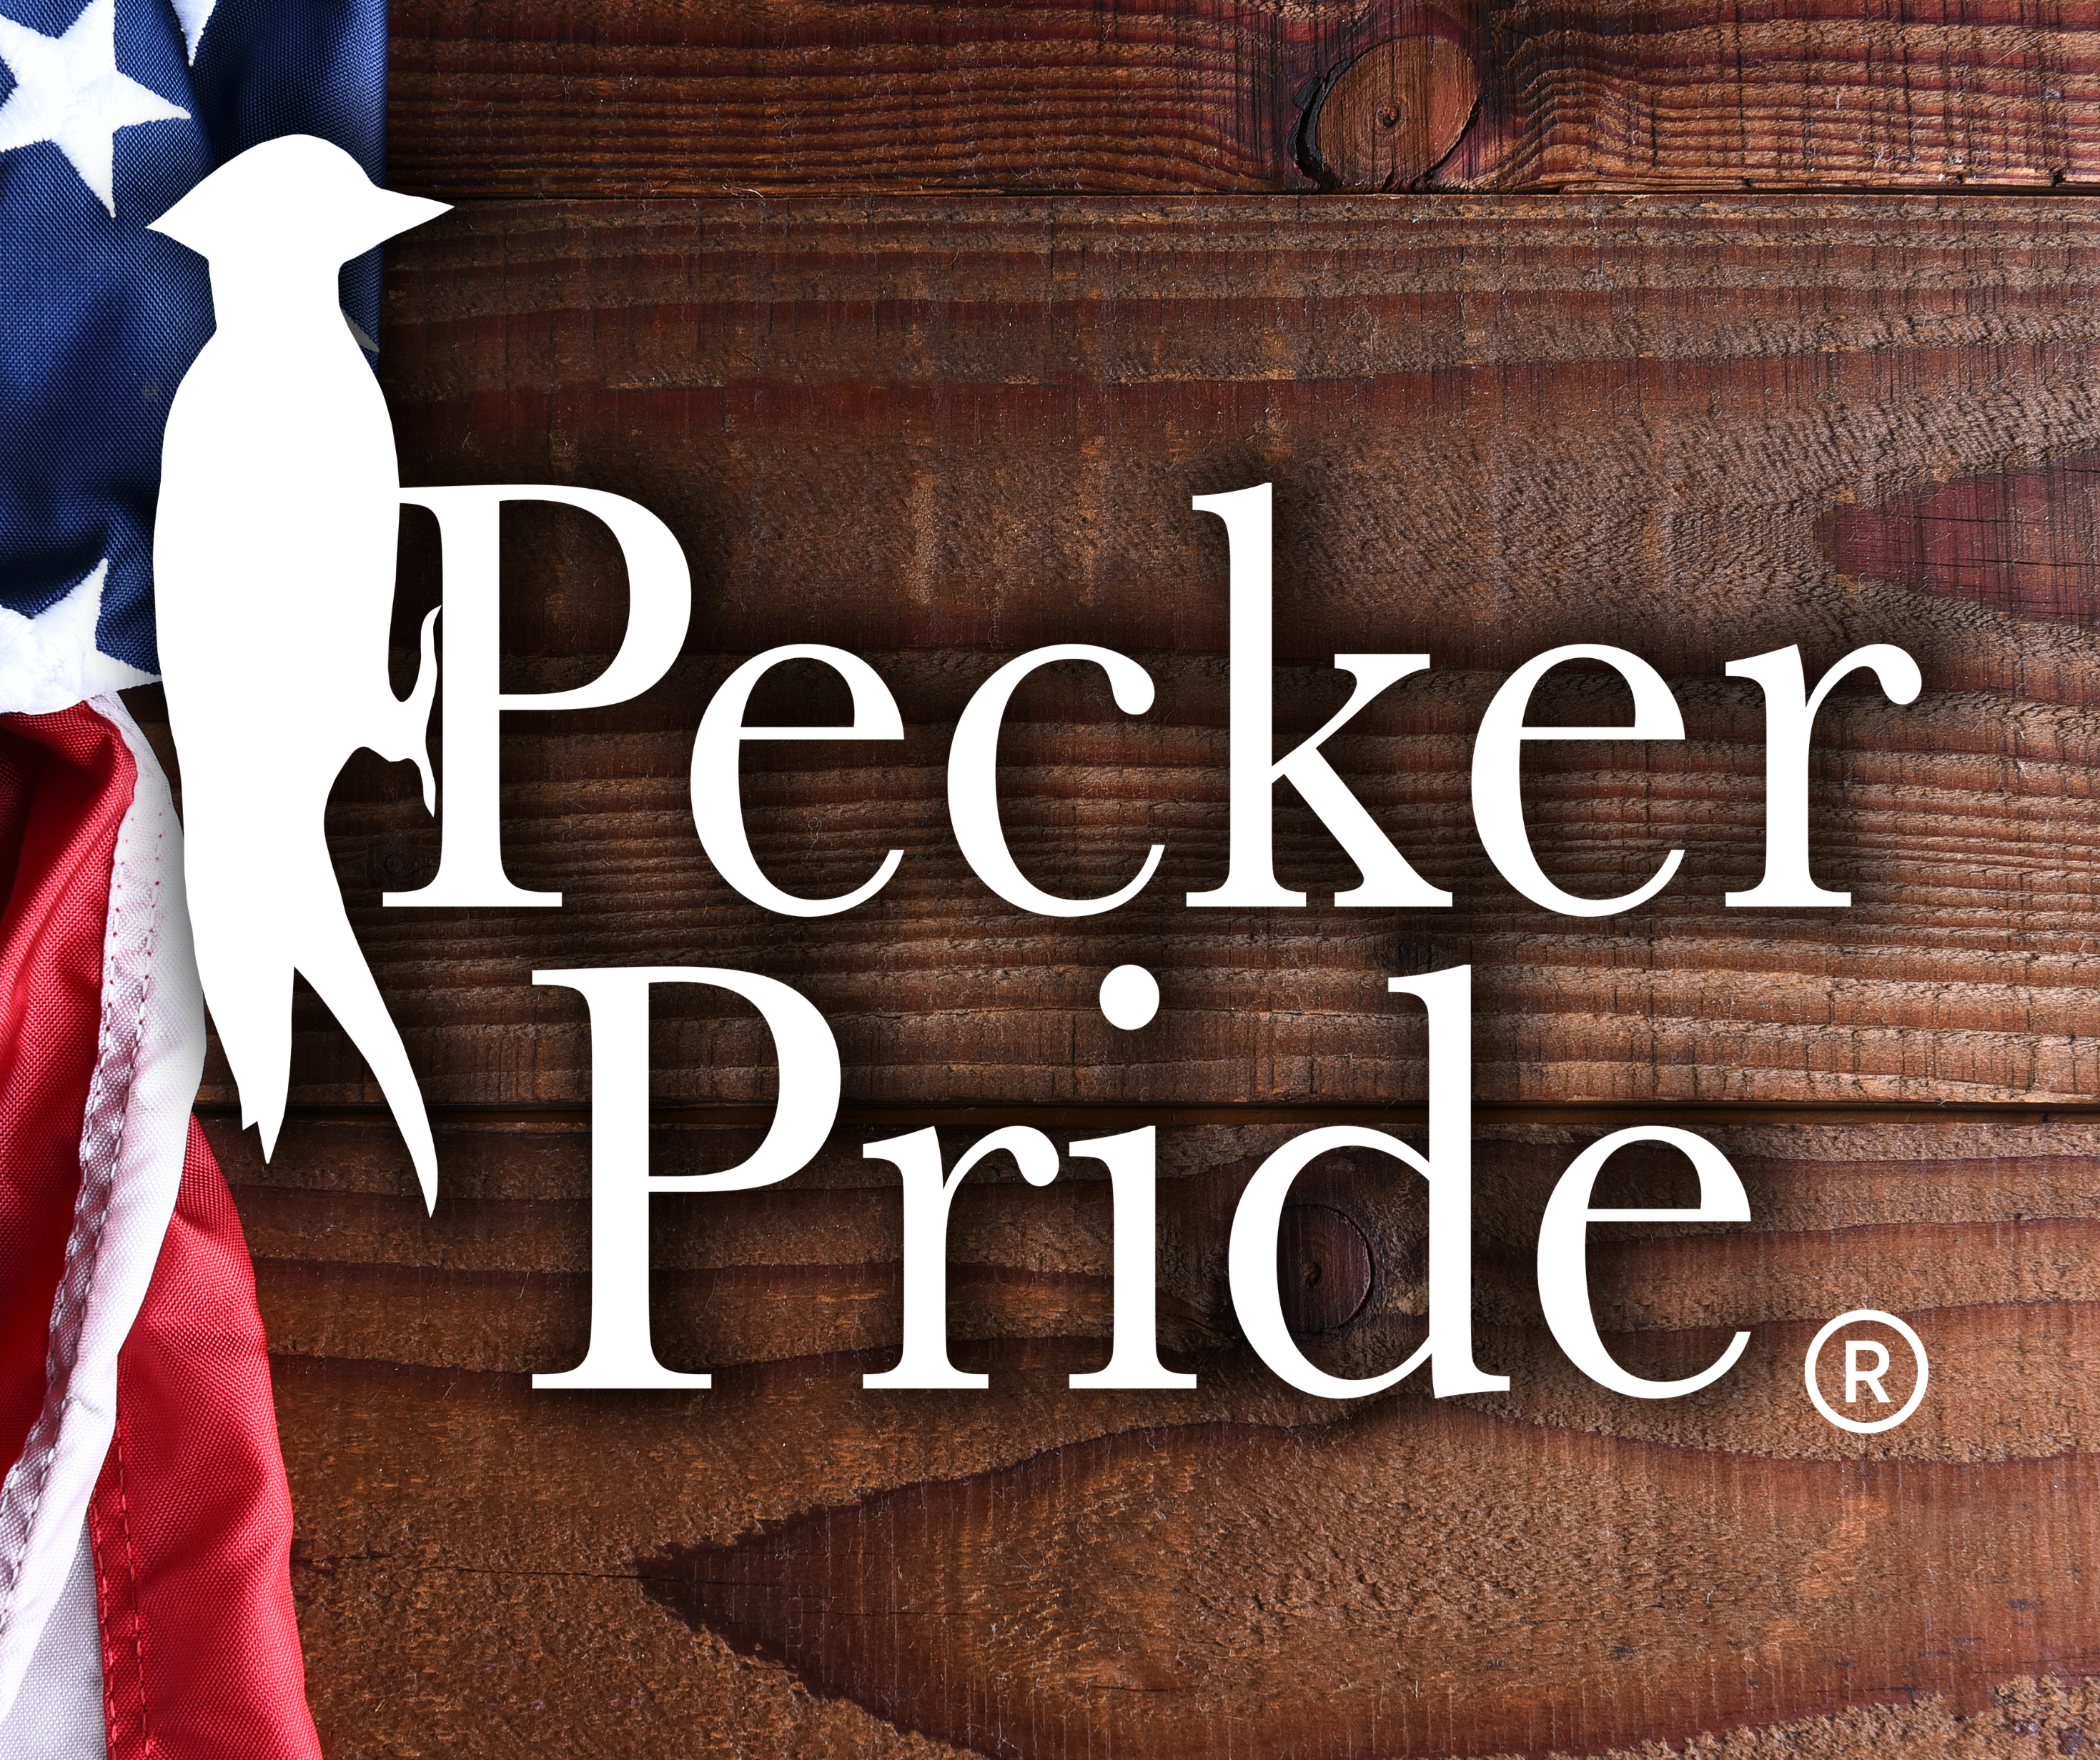 Pecker Pride